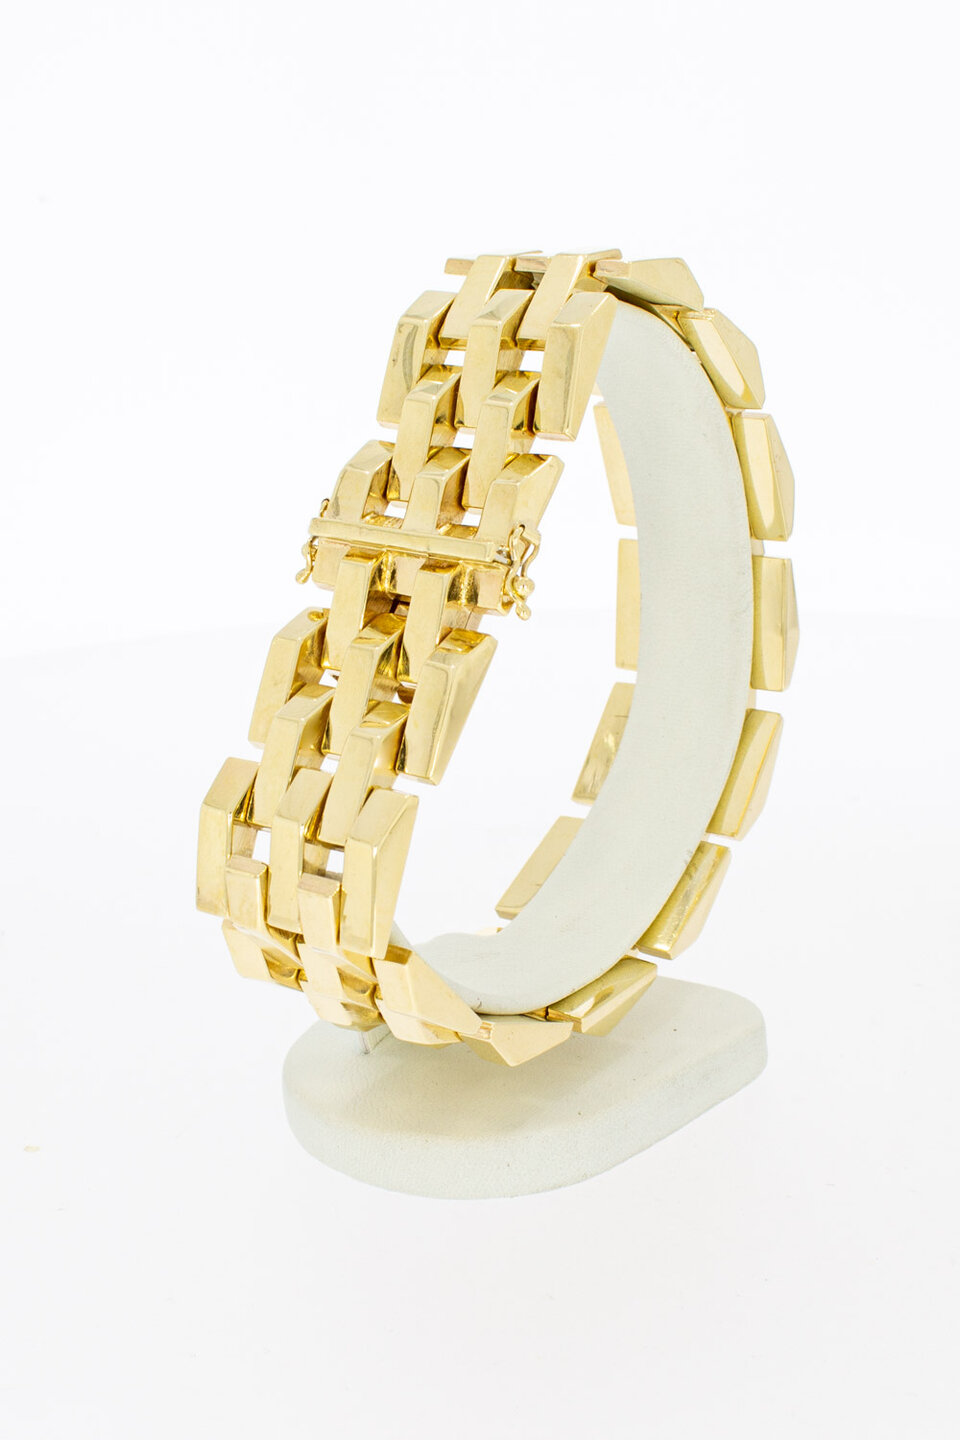 14 Karat breites Goldbarren Armband – 22,5 cm